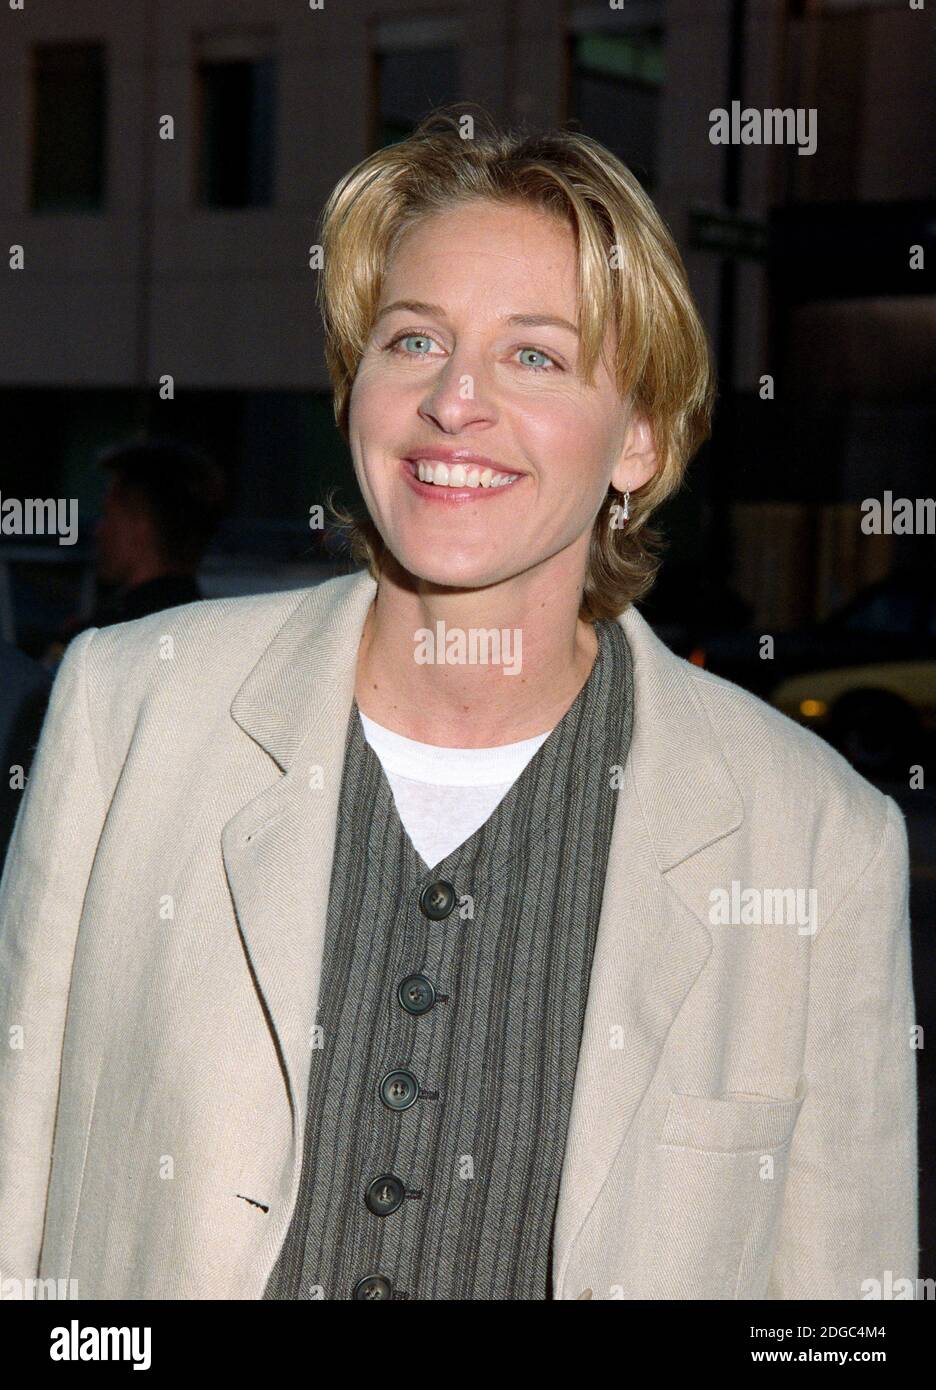 ARCHIVIO: LOS ANGELES, CA. 28 luglio 1994: Attrice/comico Ellen Degeneres alla prima di 'The Mask' a Los Angeles. Foto del file © Paul Smith/Caratteristiche Foto Stock